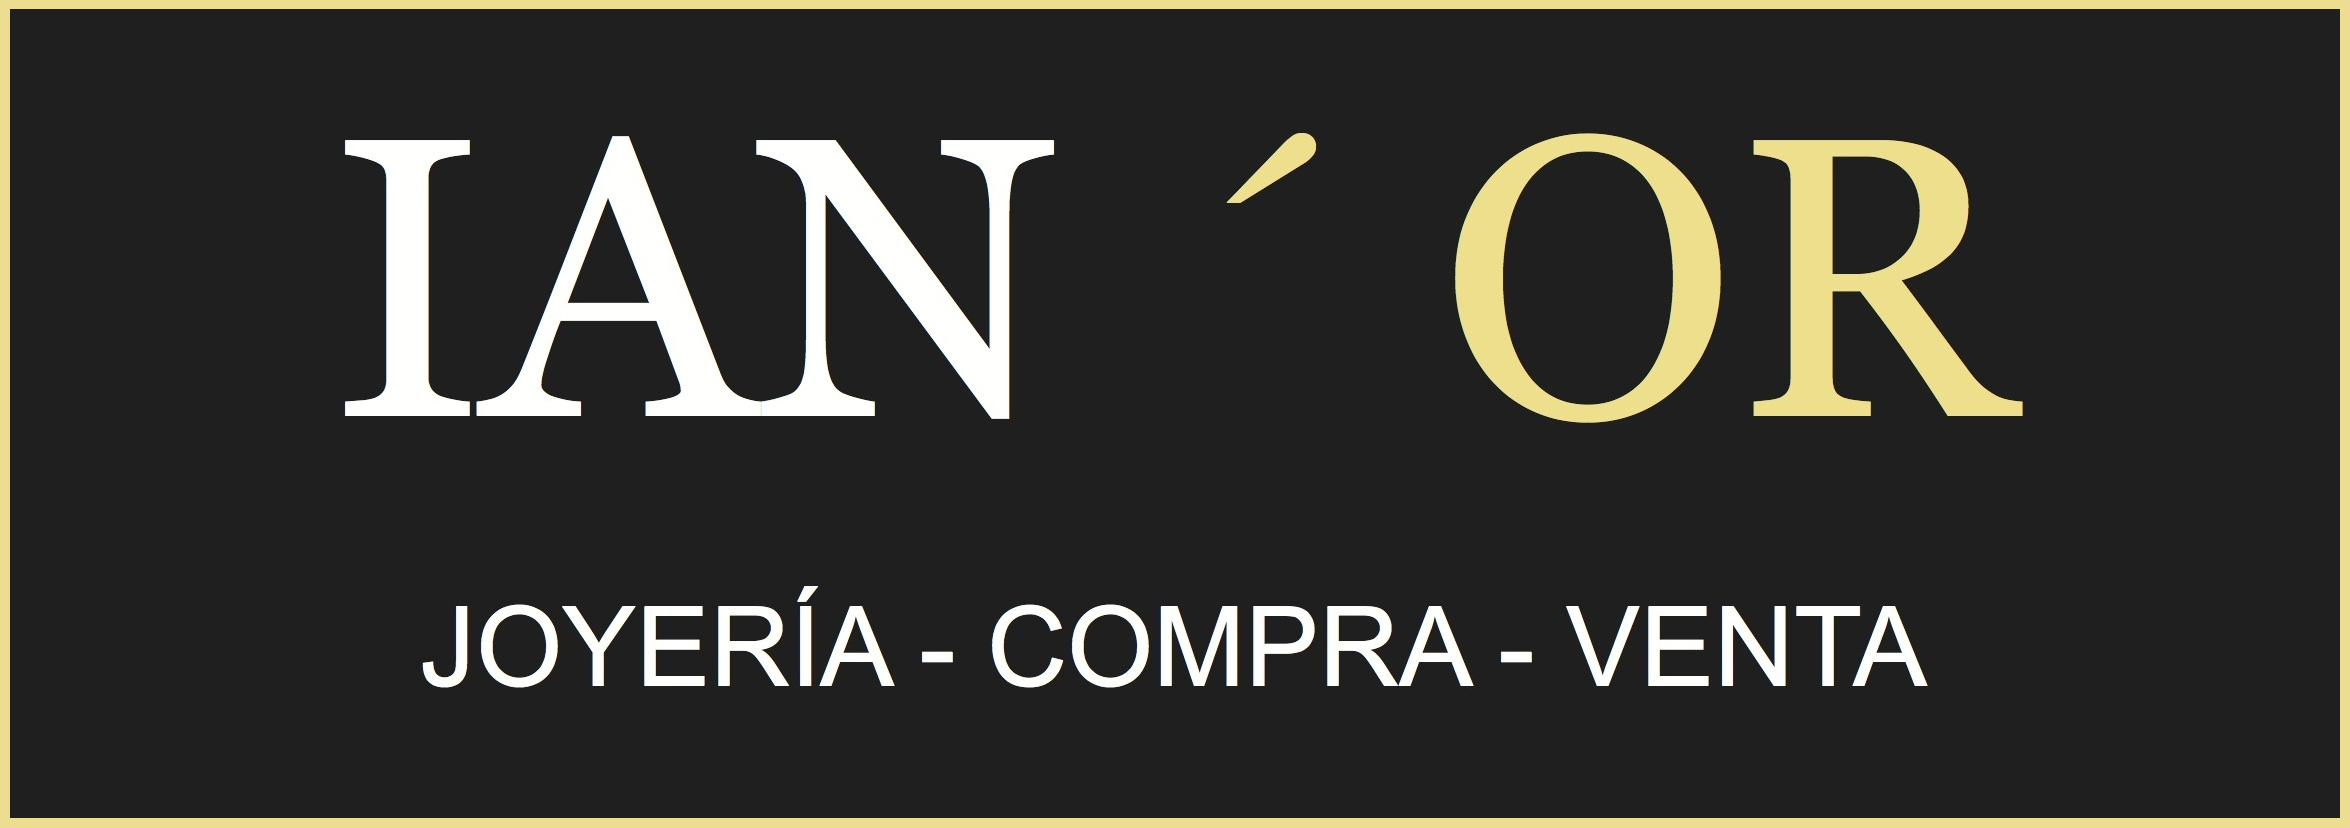 Logo Grande Joyería IAN'OR - Compra Venta de oro en Barcelona al mejor precio. Tasación de joyas.